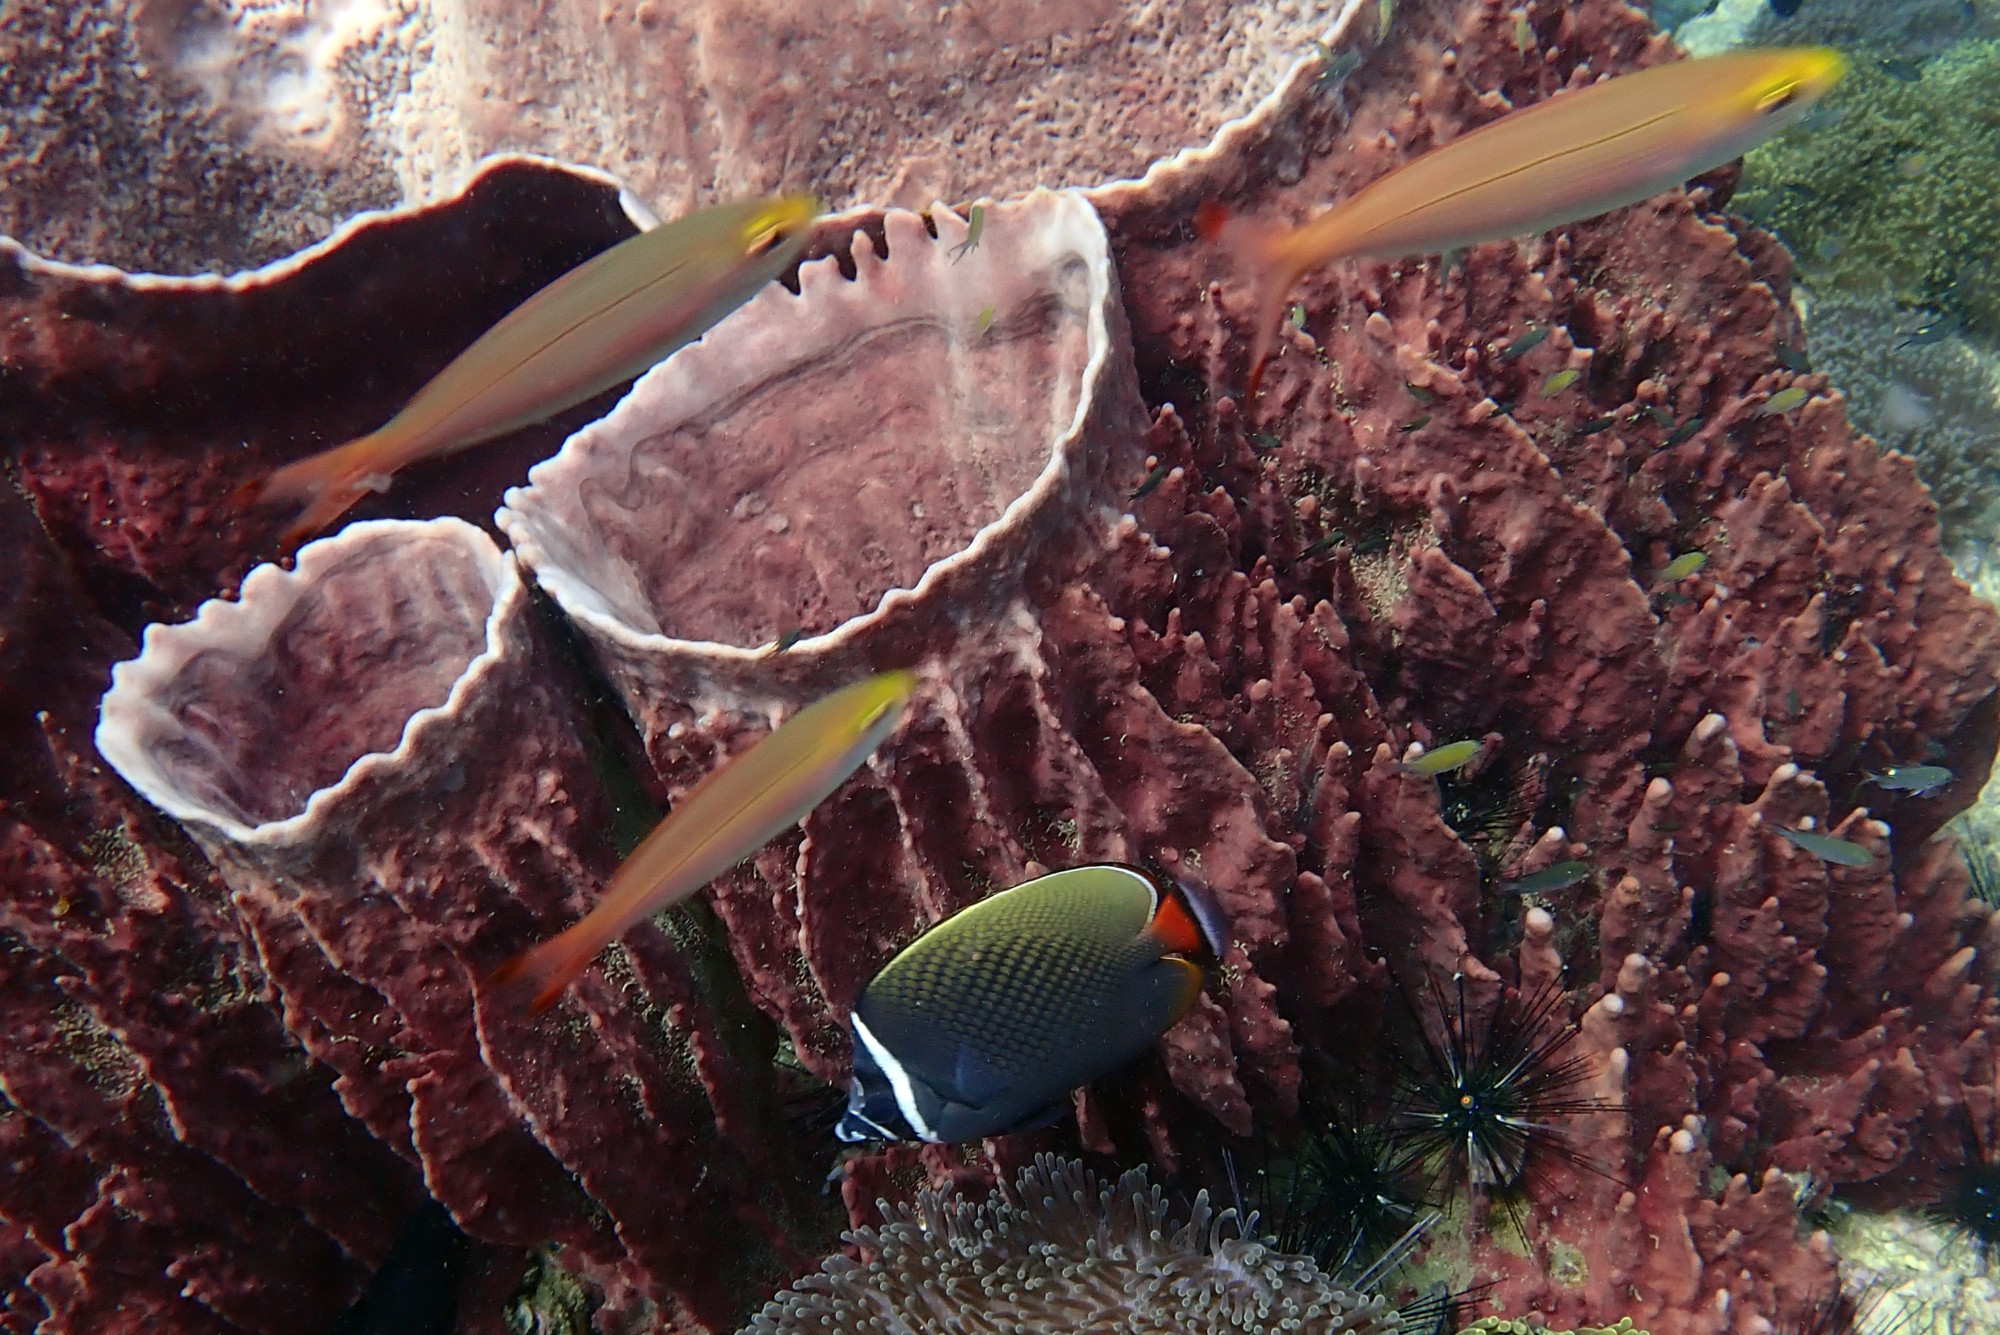 Anemone Reef, Thailand